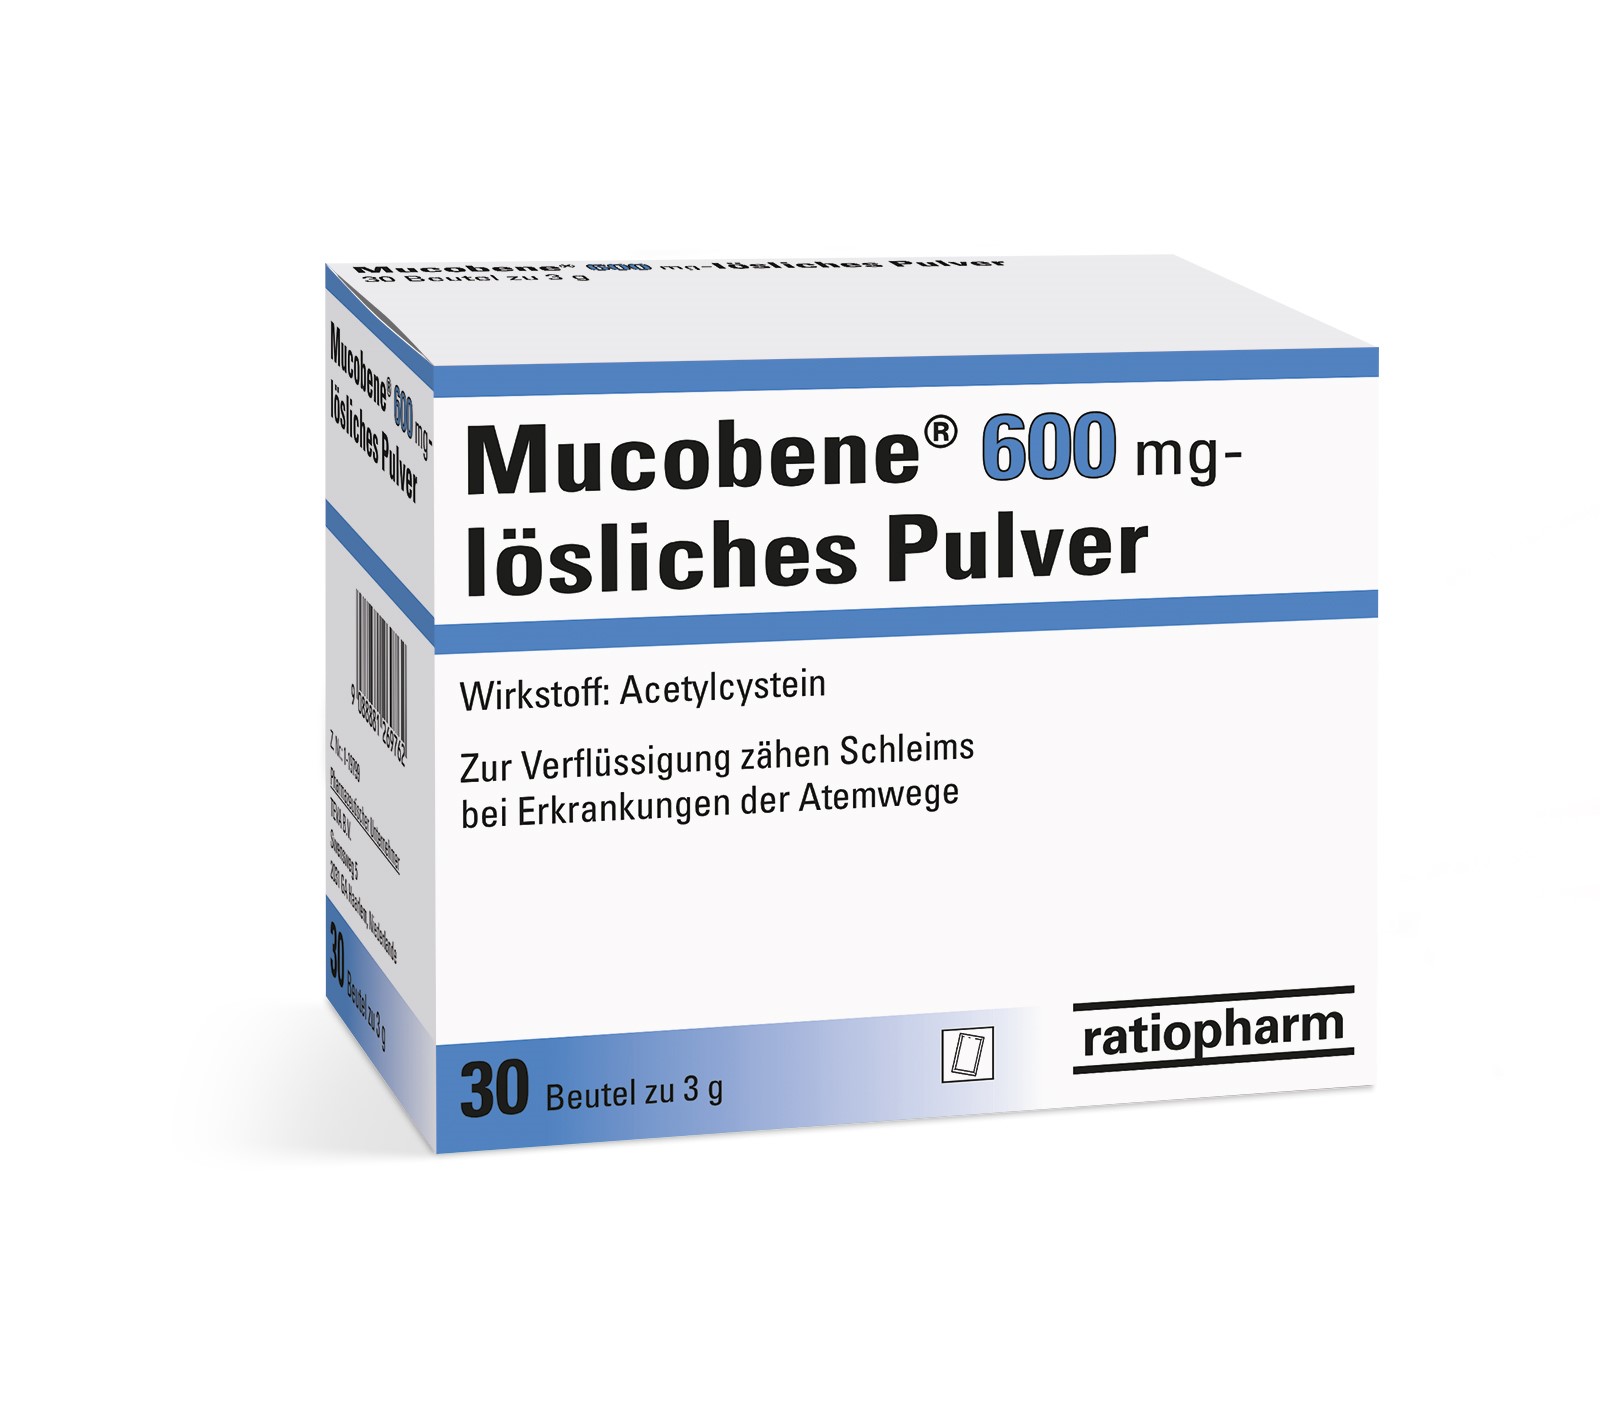 Mucobene 600 mg - lösliches Pulver